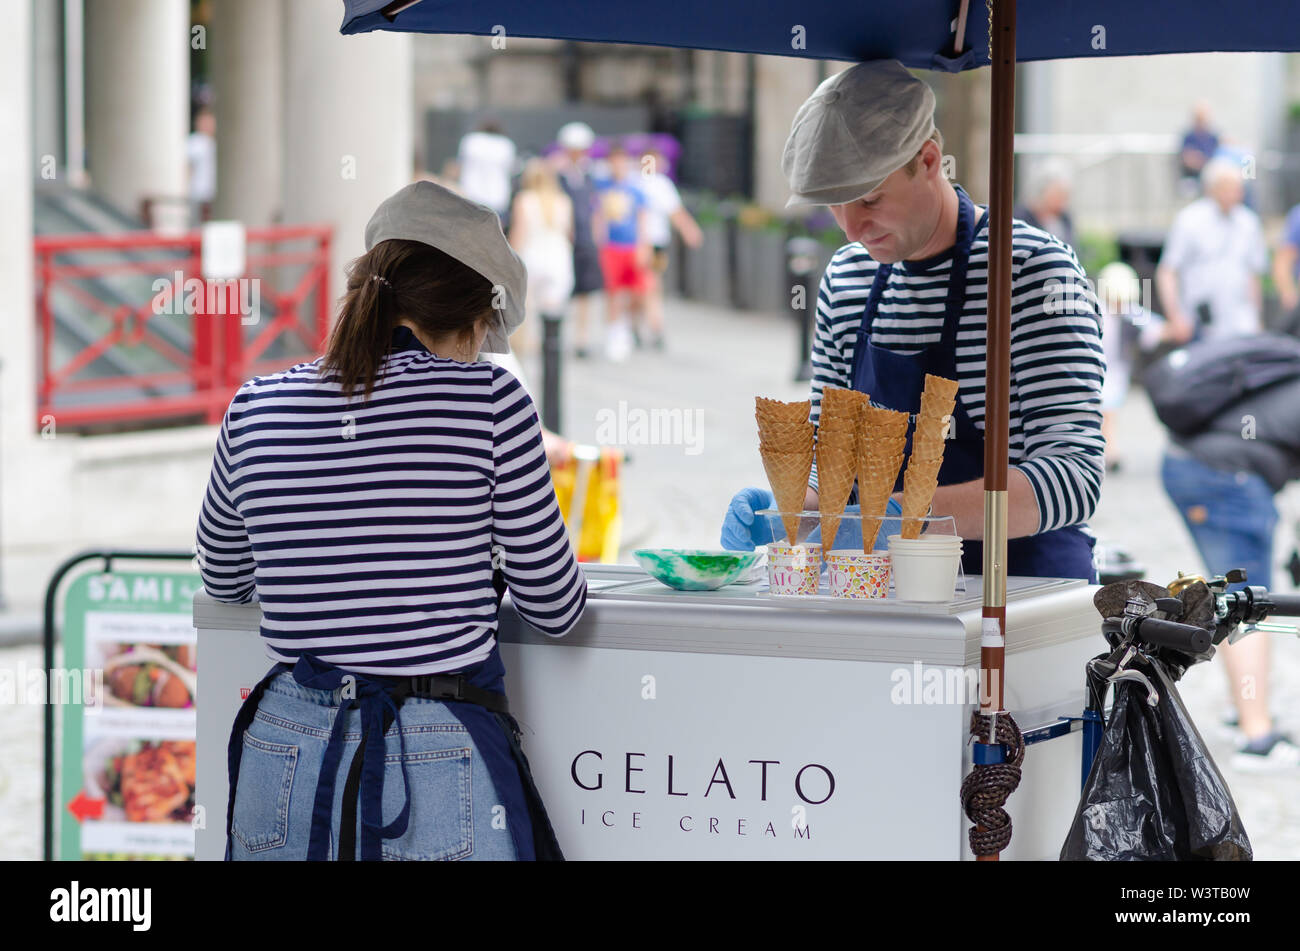 Jeune fille et un homme se vendent Gelato glace dans la rue de Londres, à proximité de la Tower Bridge. Banque D'Images